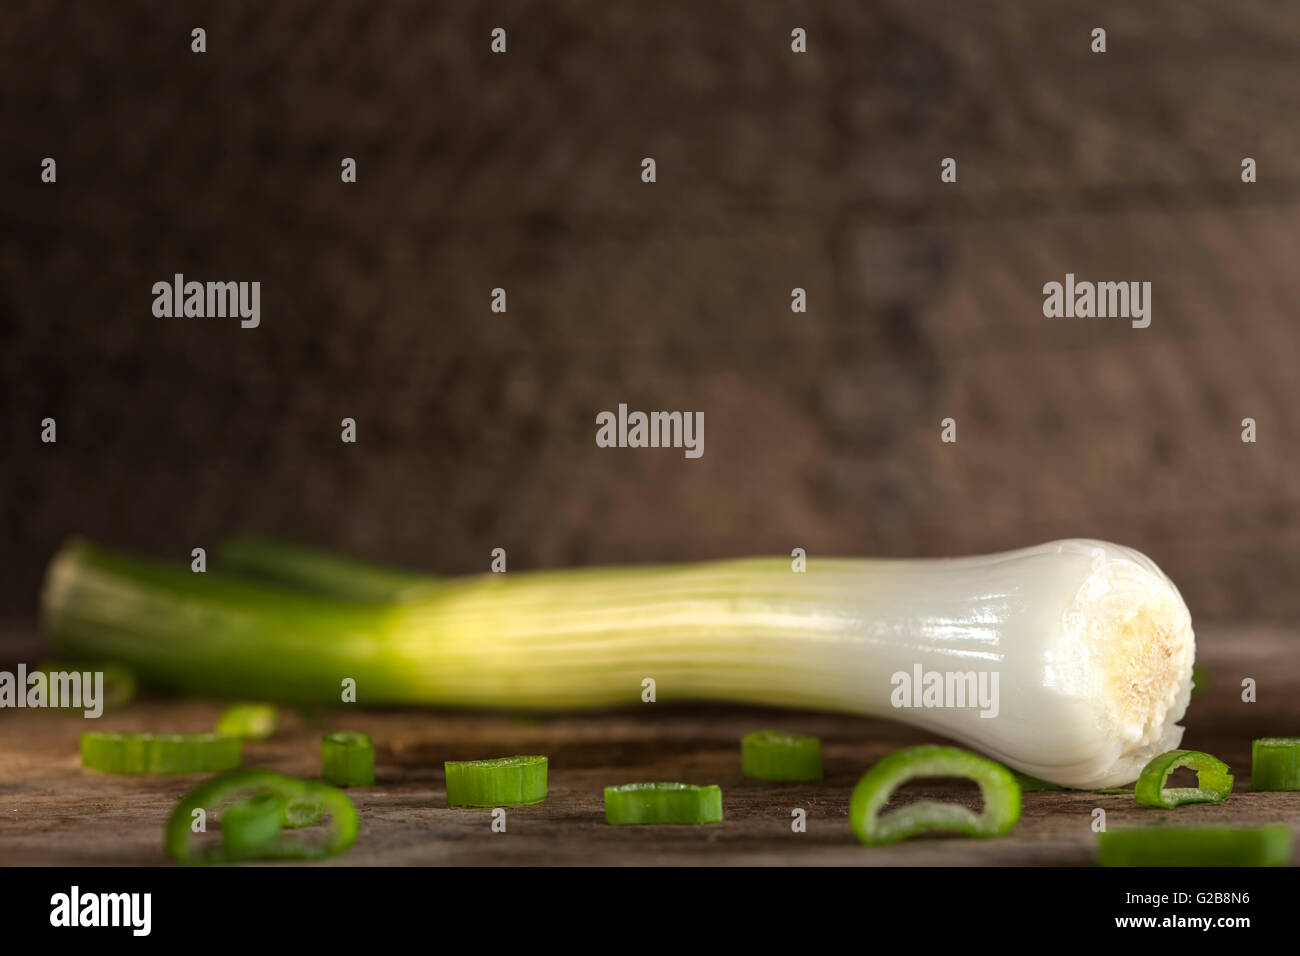 Eine Frühlingszwiebel auch bekannt als Salat Zwiebel, grüne Zwiebel oder Schalotte auf Holz Hintergrund Stockfoto